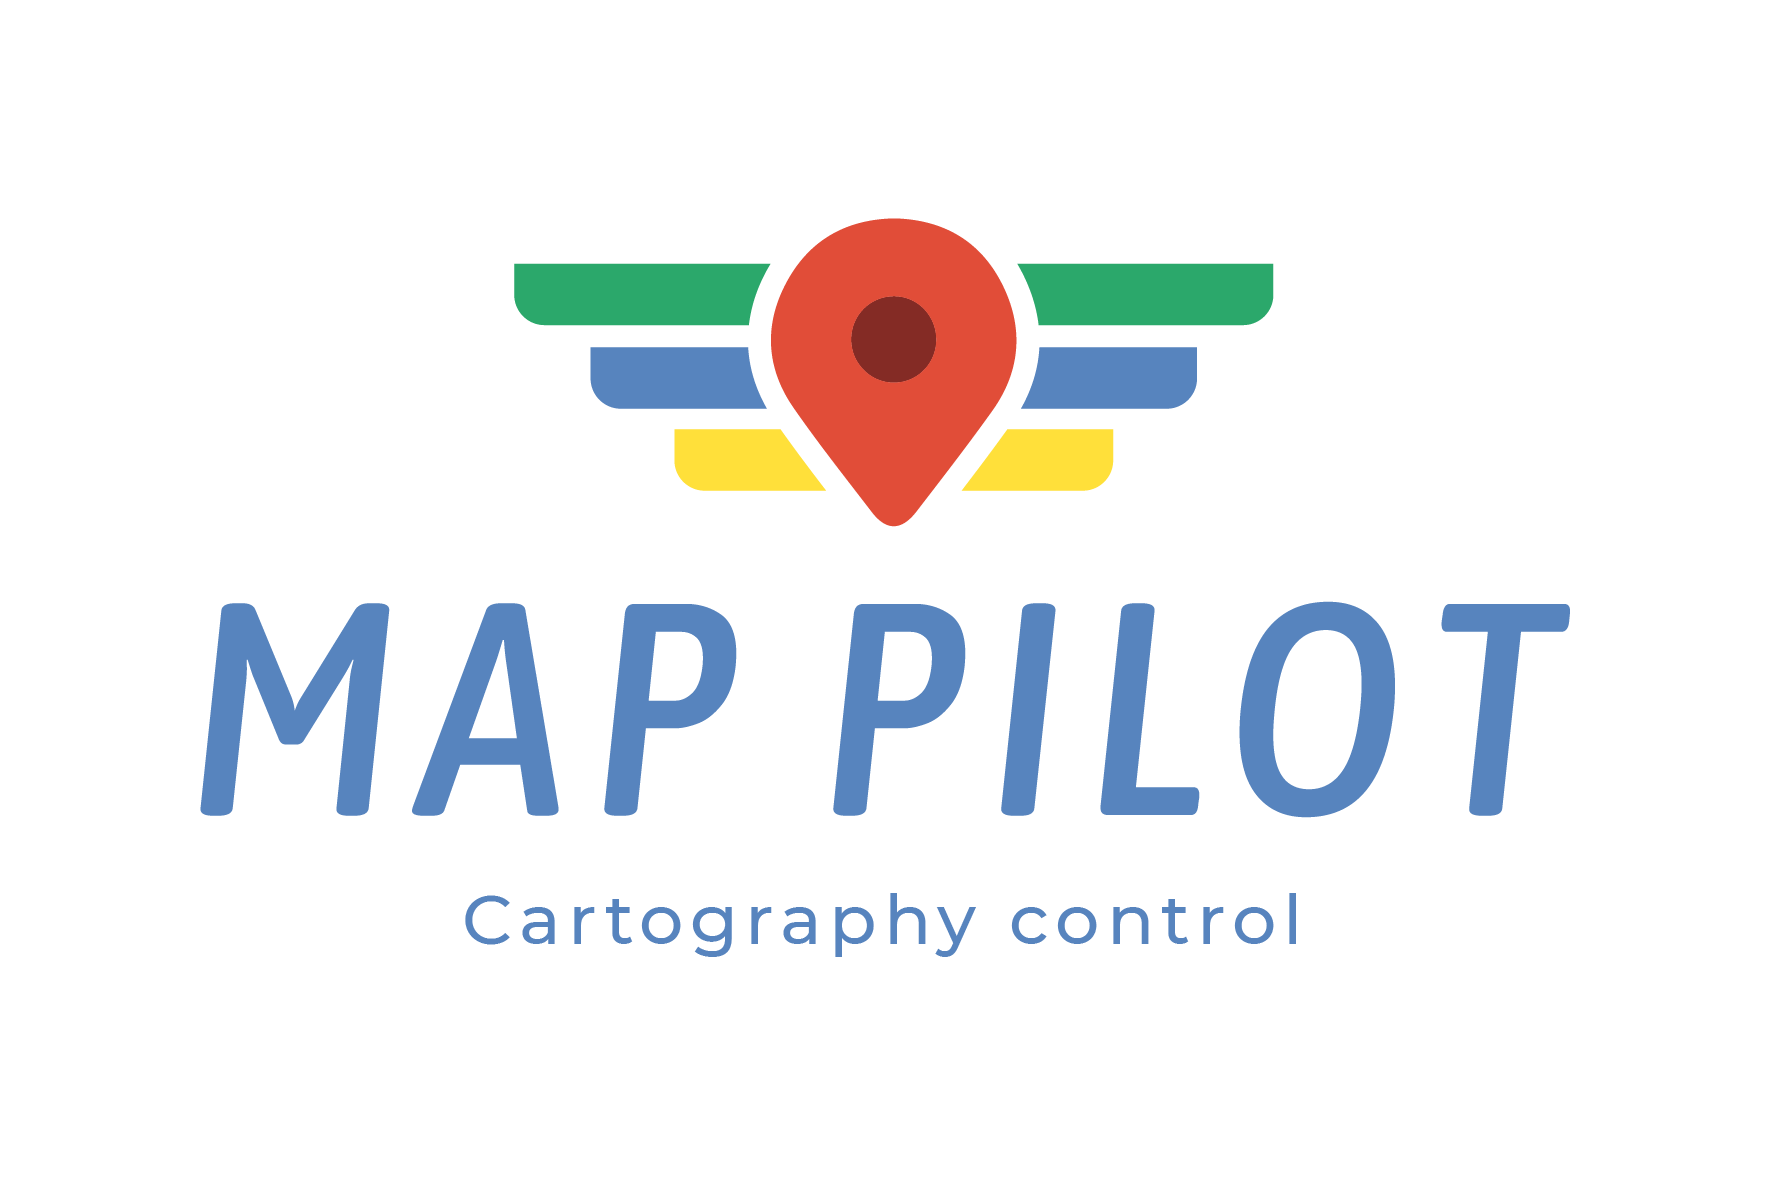 Map-pilot